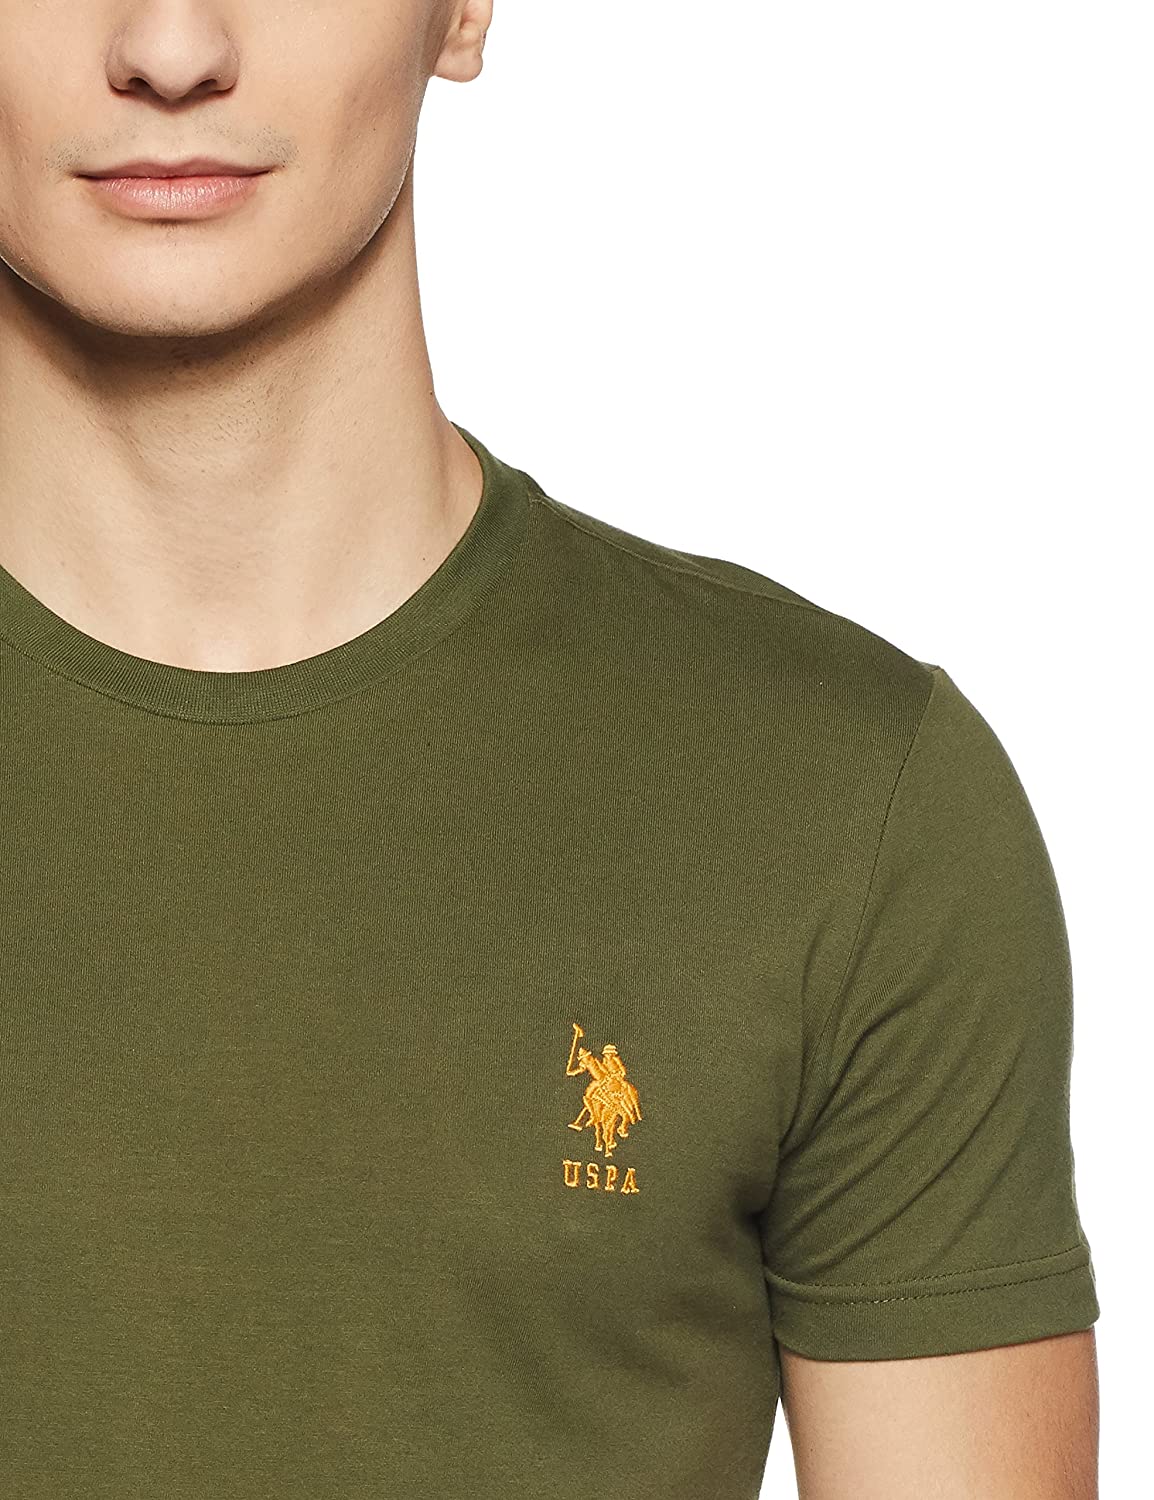 U.S. Polo Assn. Cotton Casual Green T-shirt For Men - Stilento